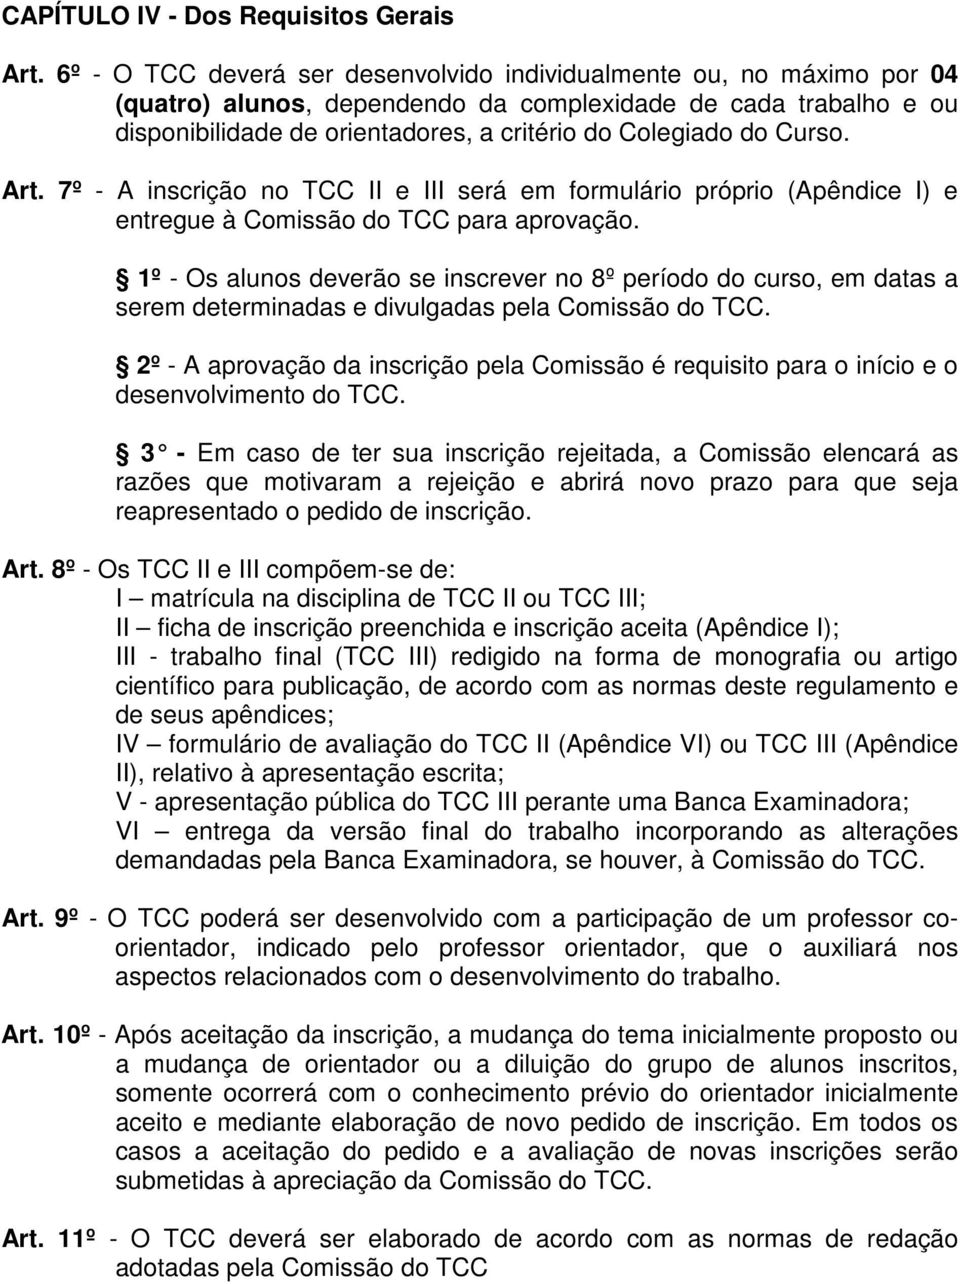 Curso. Art. 7º - A inscrição no TCC II e III será em formulário próprio (Apêndice I) e entregue à Comissão do TCC para aprovação.